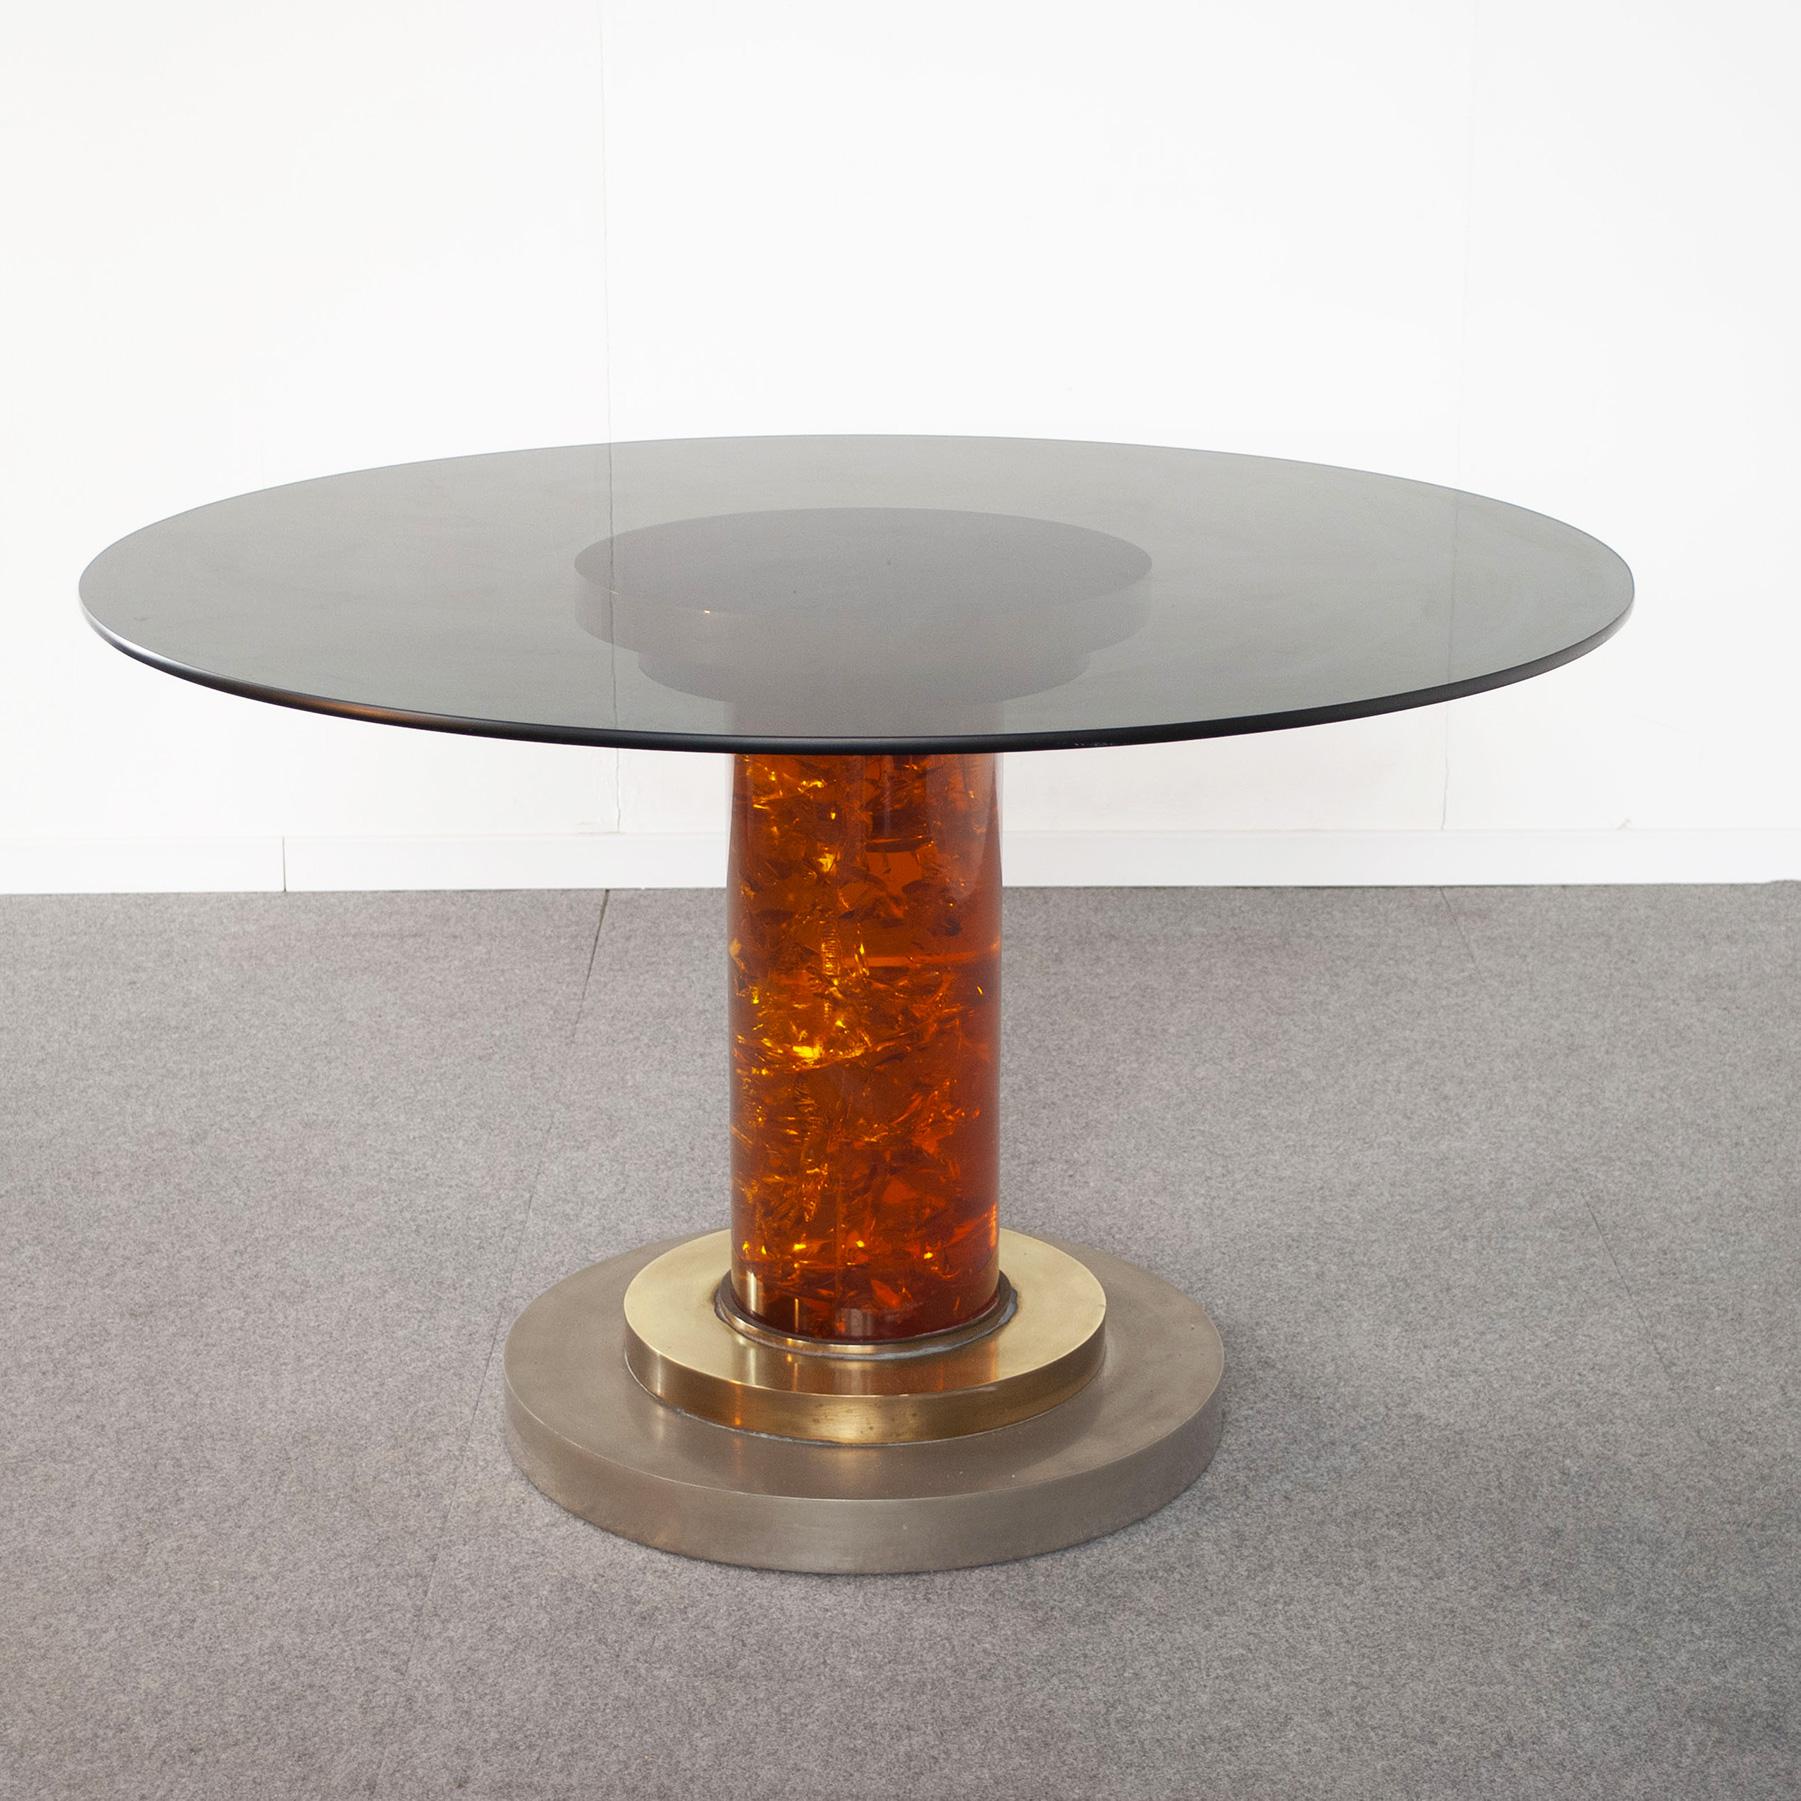 70er-Jahre-Tisch aus einer eleganten Mischung von Metallen mit poliertem Messing und Stahl-Finish. Der zentrale Sockel ist aus honigfarbenem Plexiglas mit einem Durchmesser von 20 cm gefertigt. Die Rauchglasplatte in der Abbildung ist 15 mm dick und